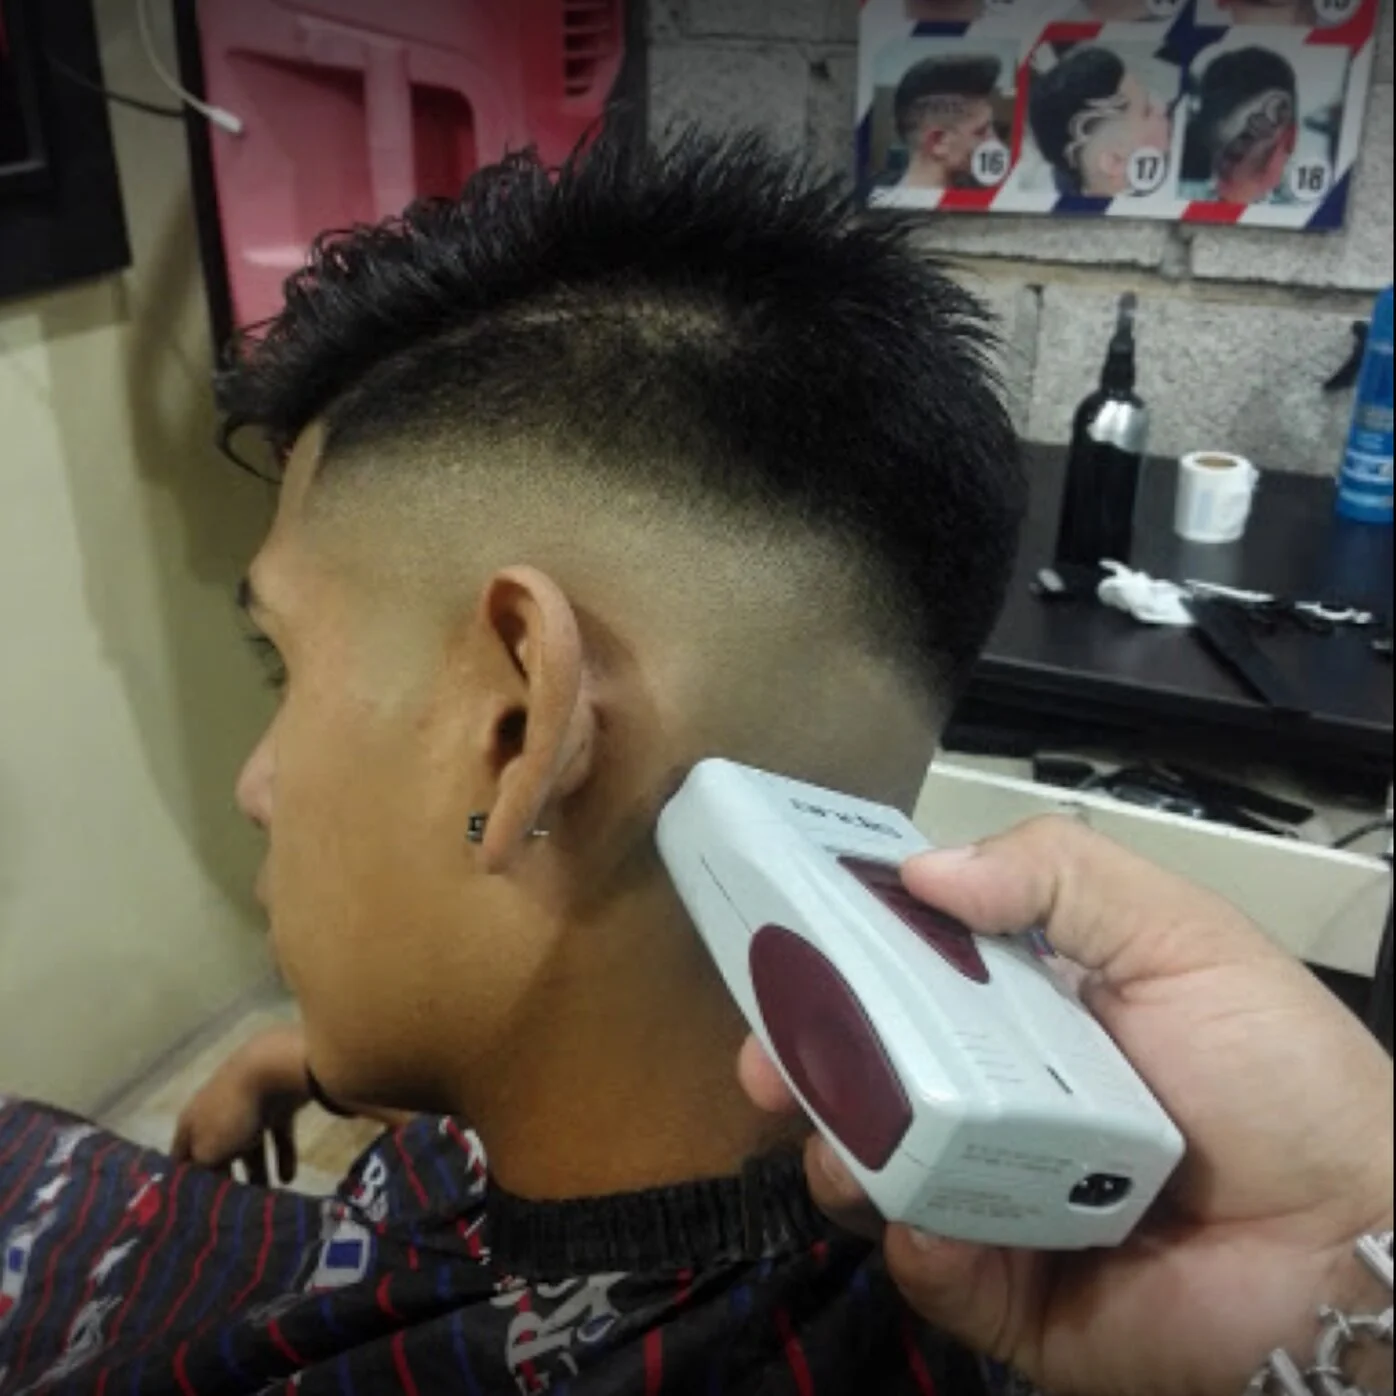 Barbería-barber-shop-corte-y-barba-12249